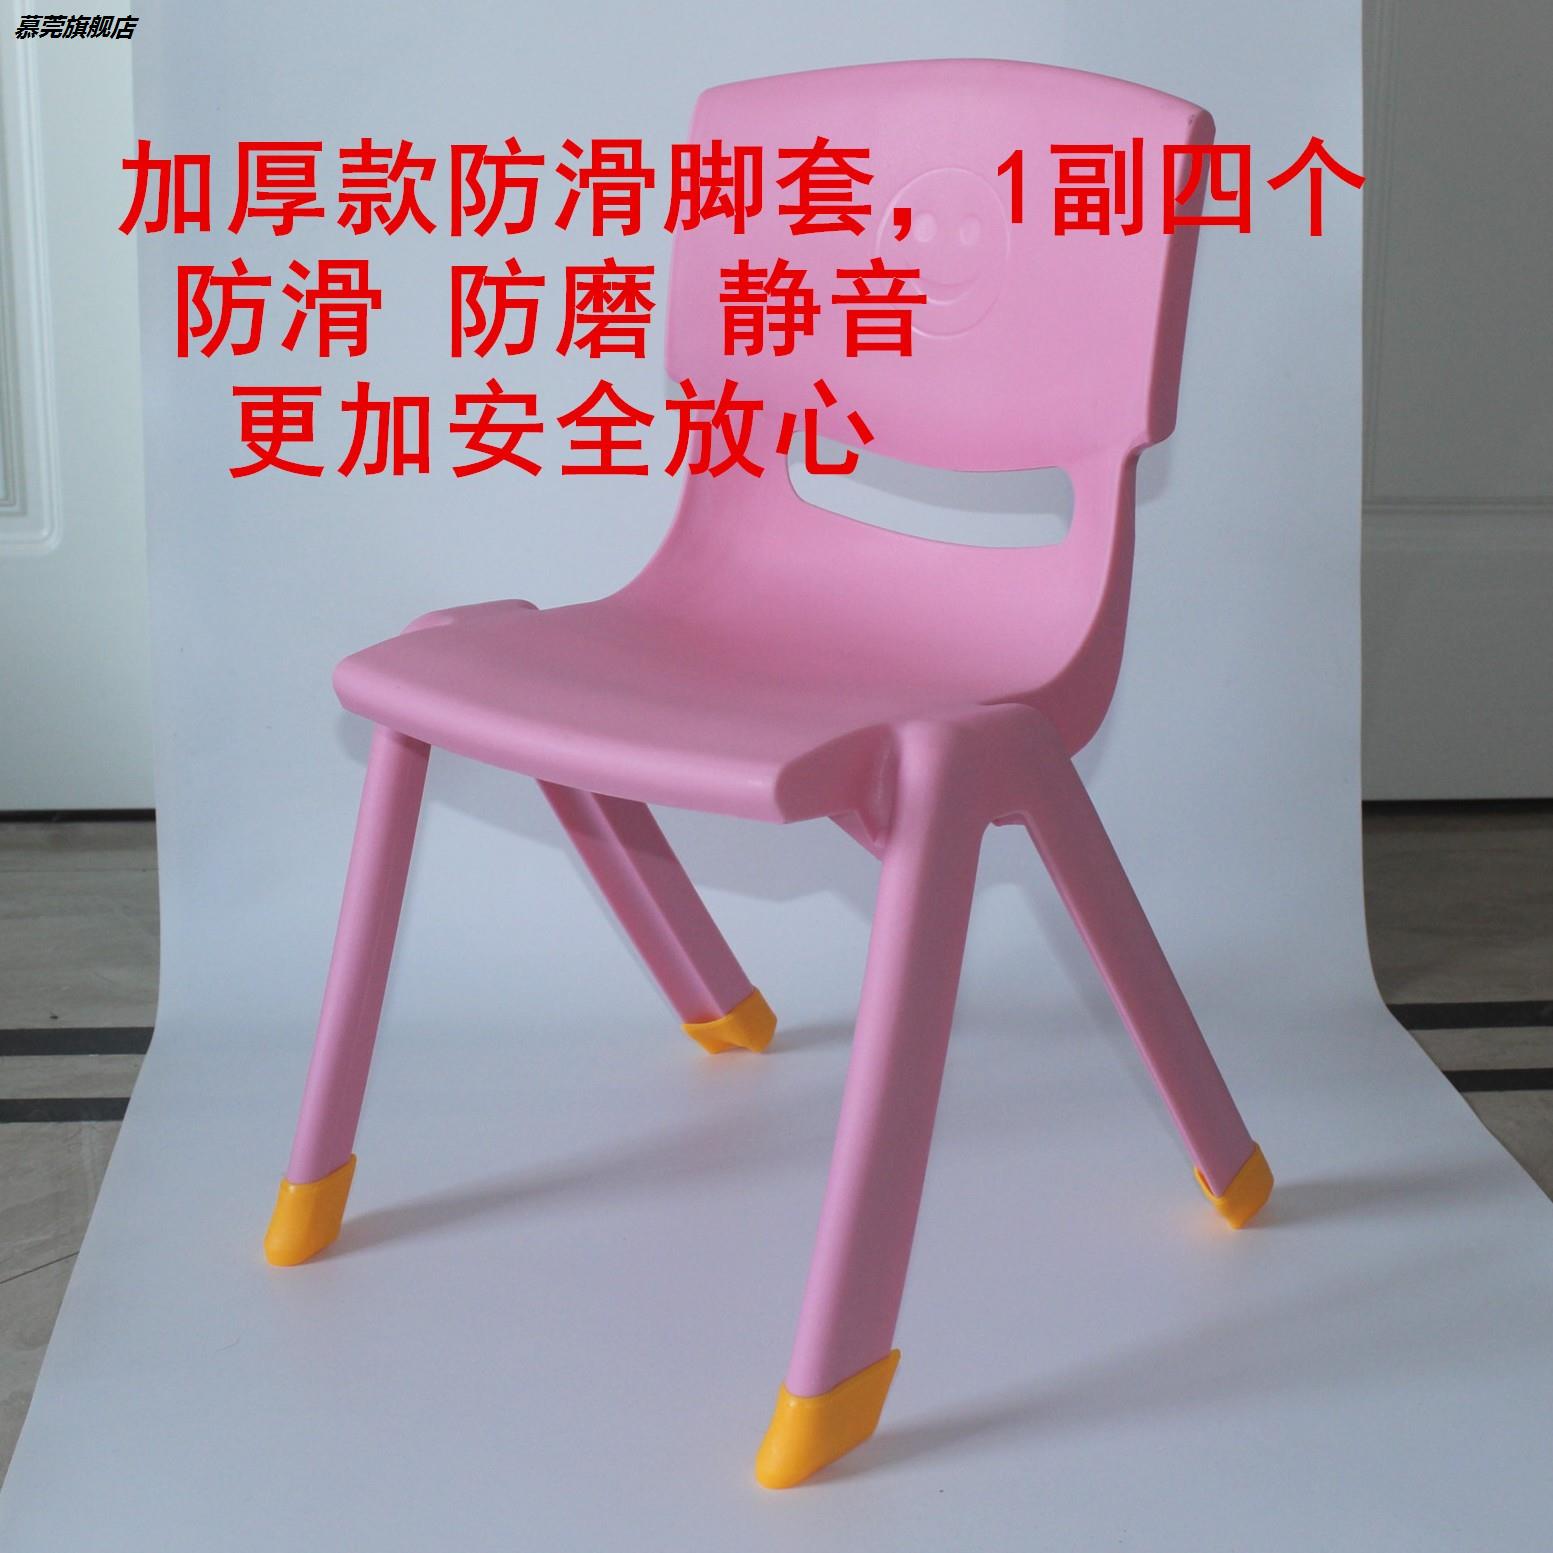 耐磨小凳子墊塑料兒童腳套防滑加厚椅子幼兒園靠背椅腿墊橡膠腳墊